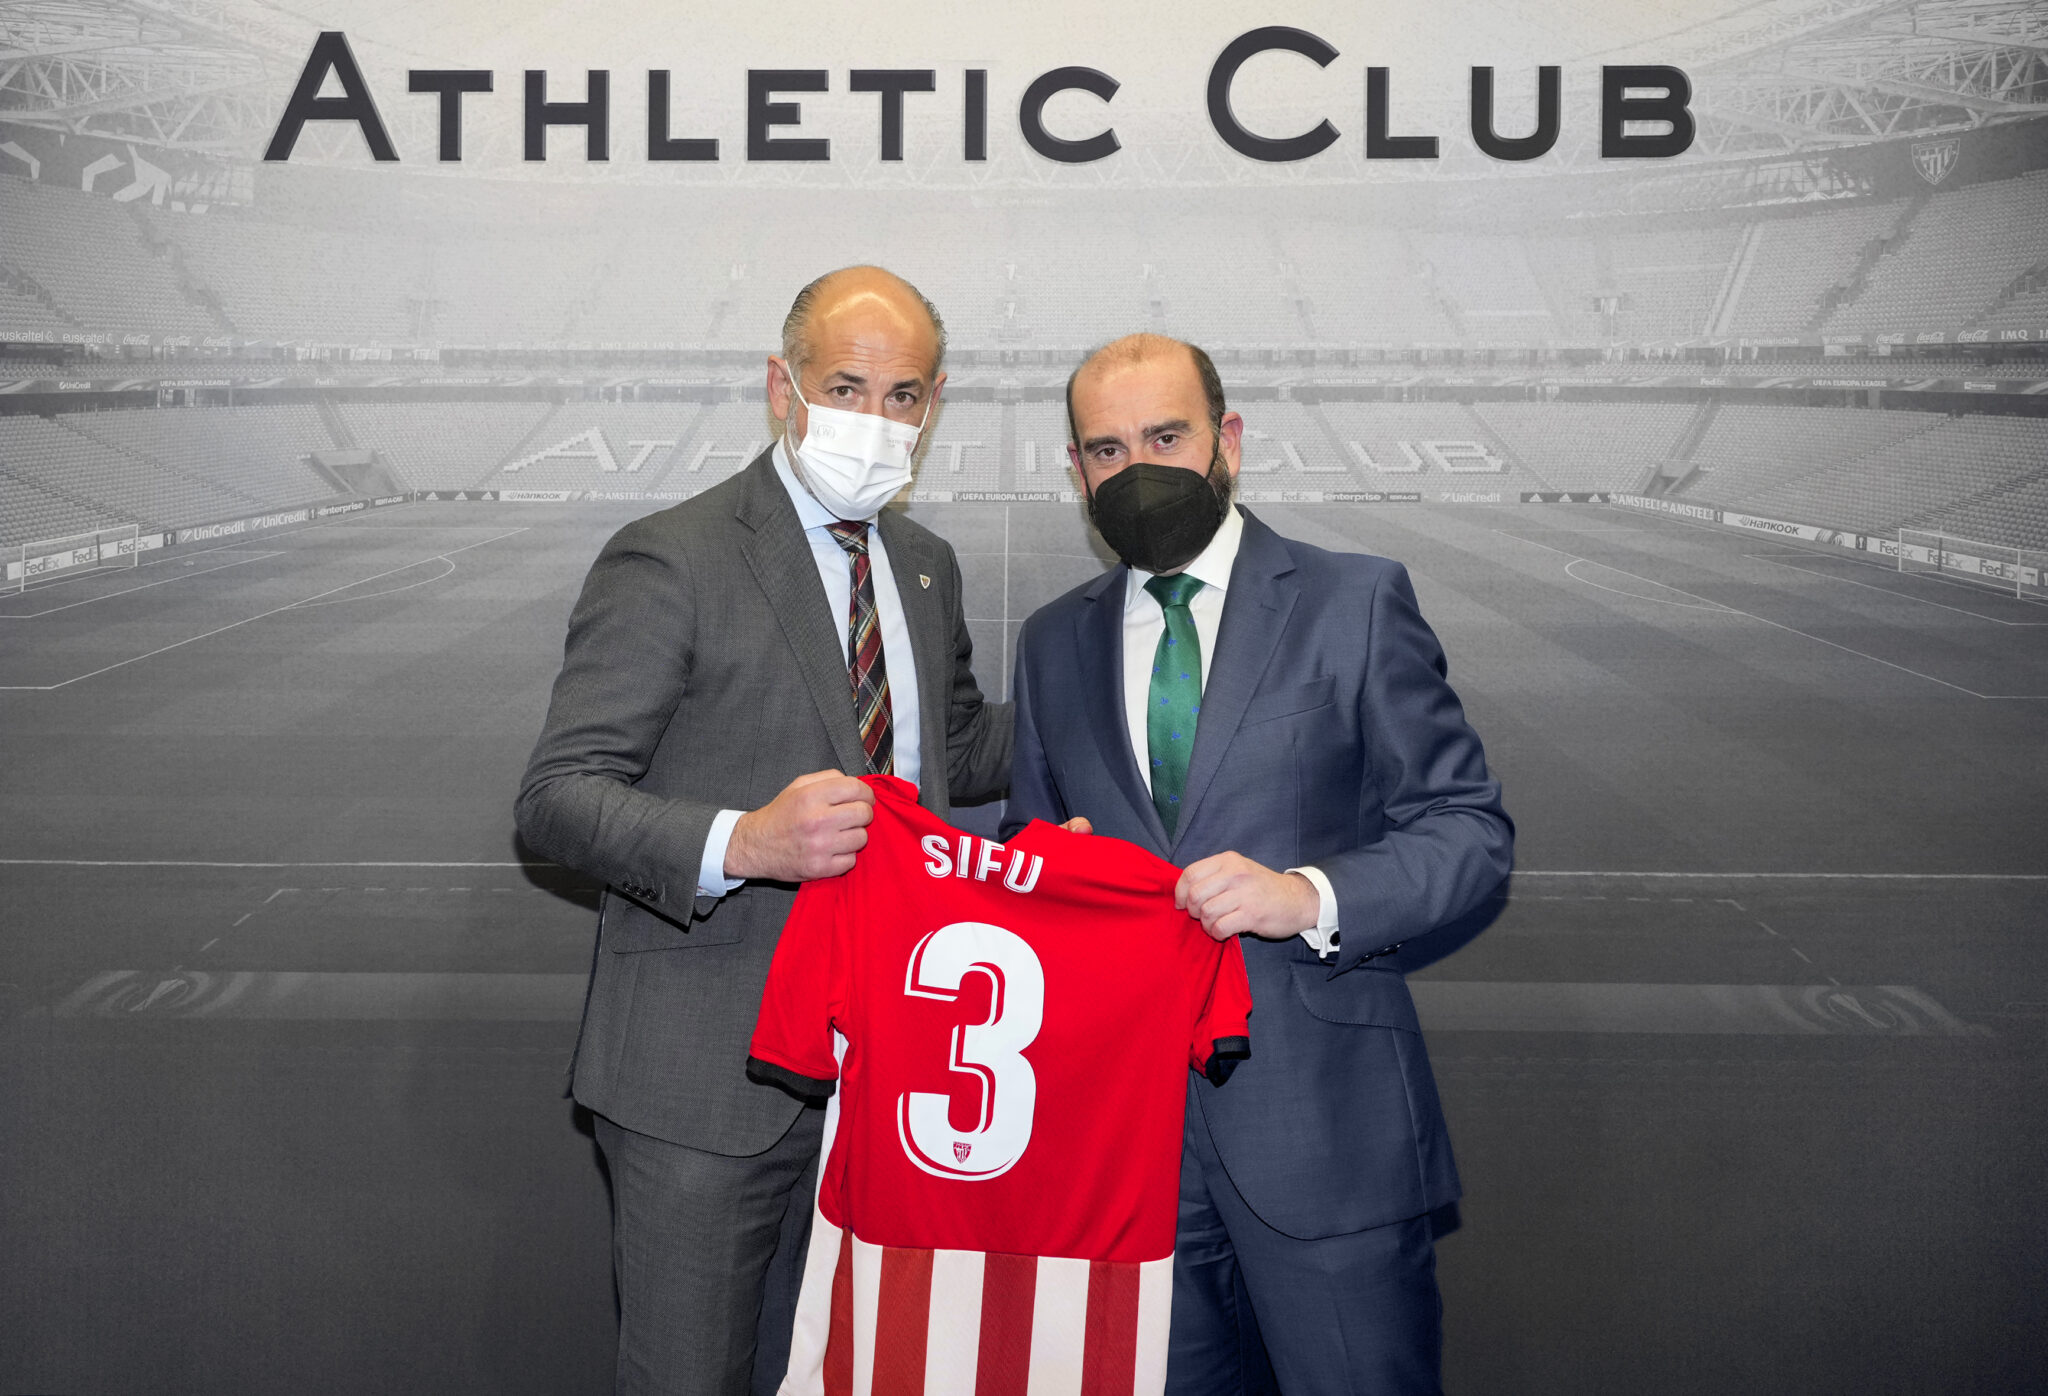 Grupo SIFU renueva el compromiso con la Fundación Athletic Club 